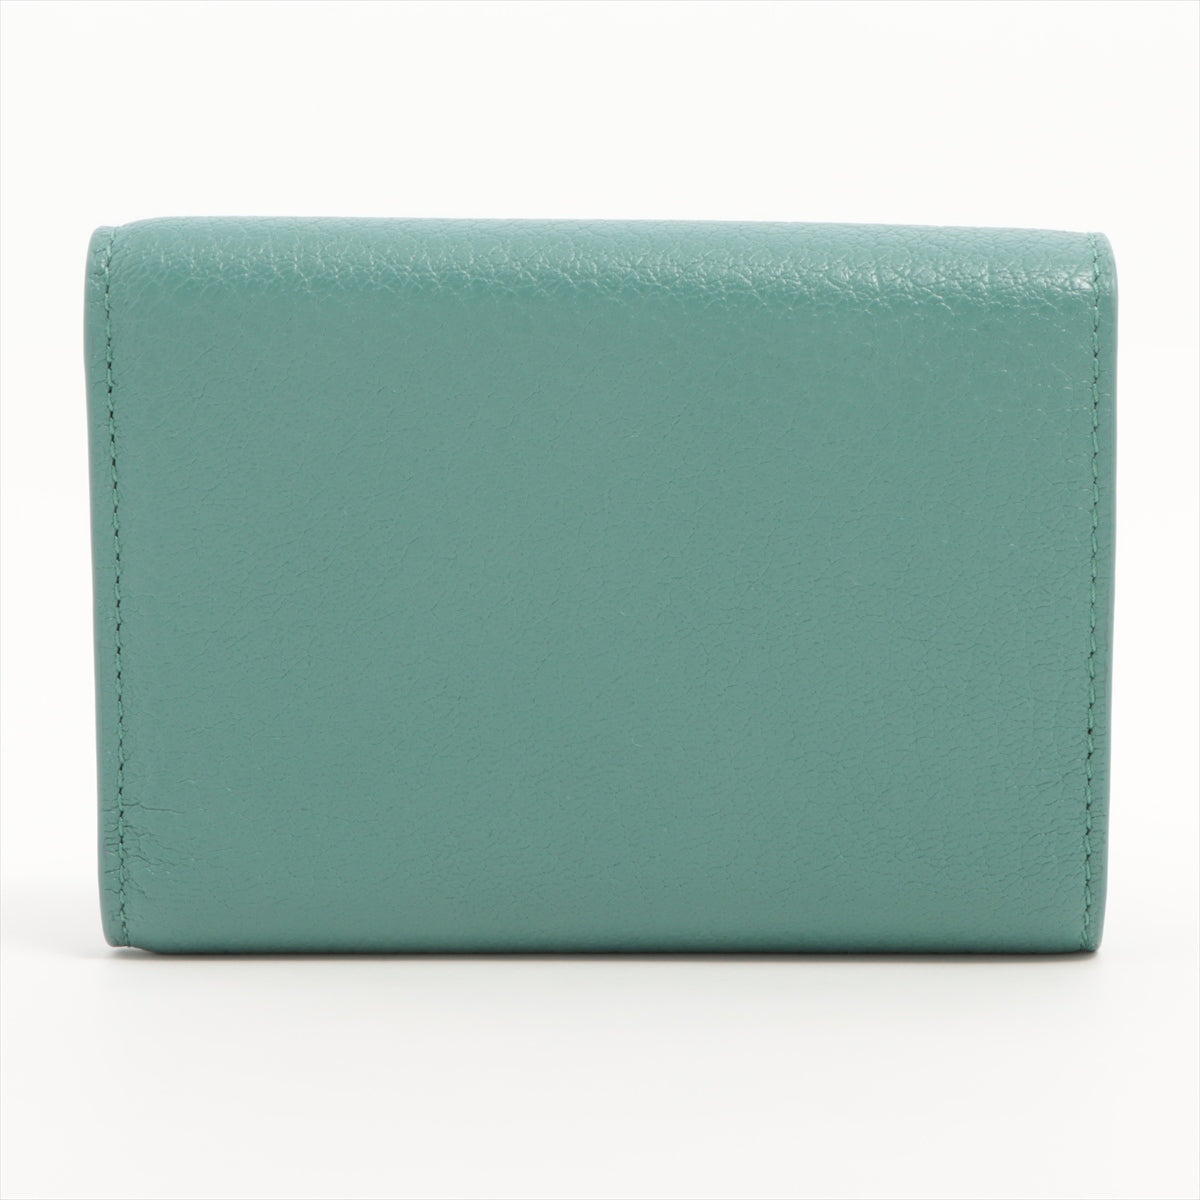 Bottega Veneta Leather Compact Wallet Blue